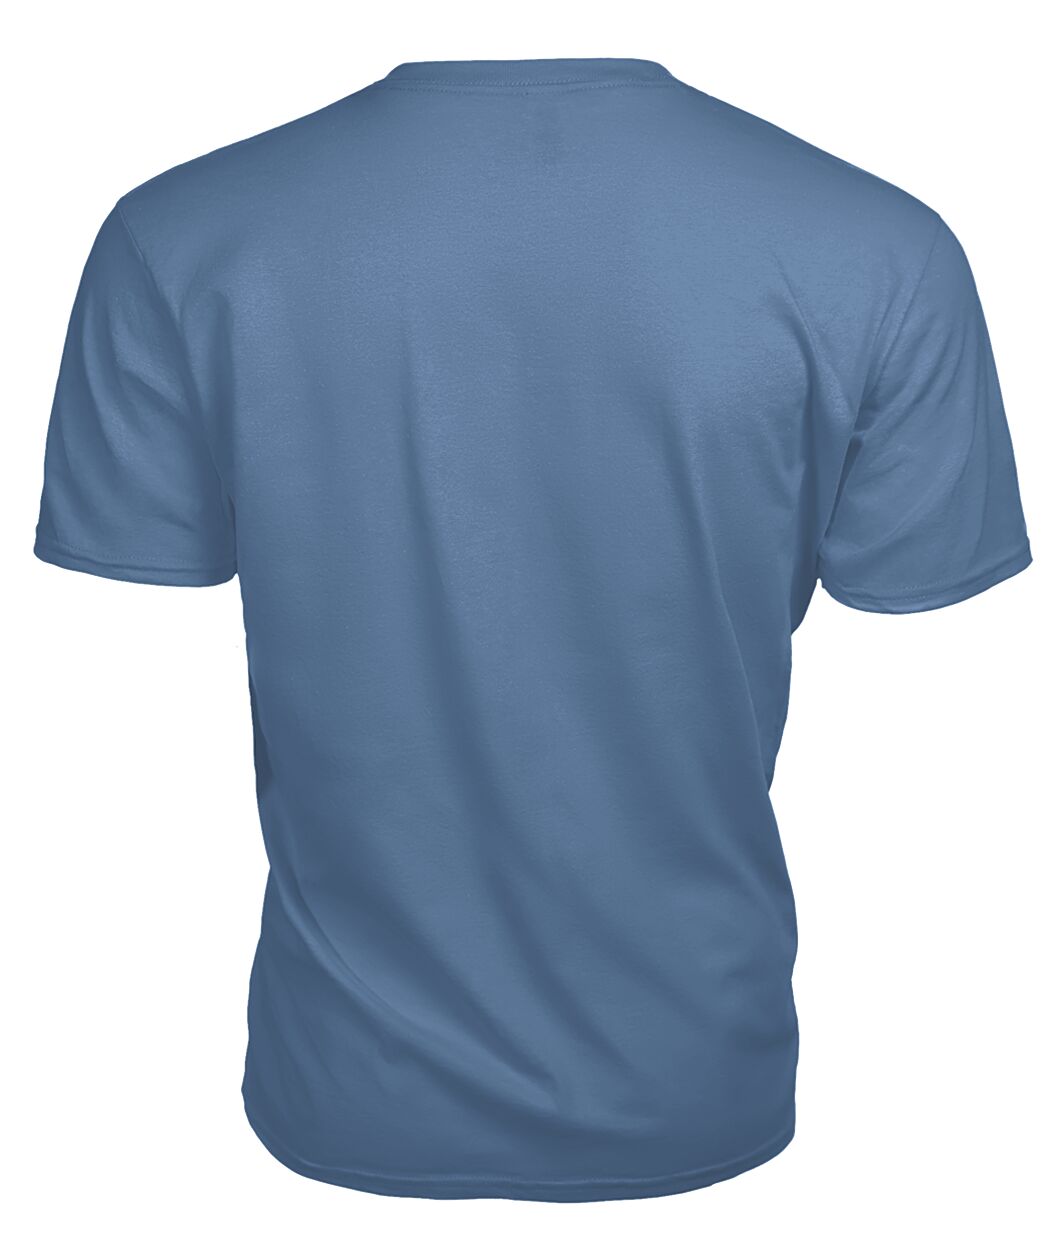 Grierson Family Tartan - 2D T-shirt